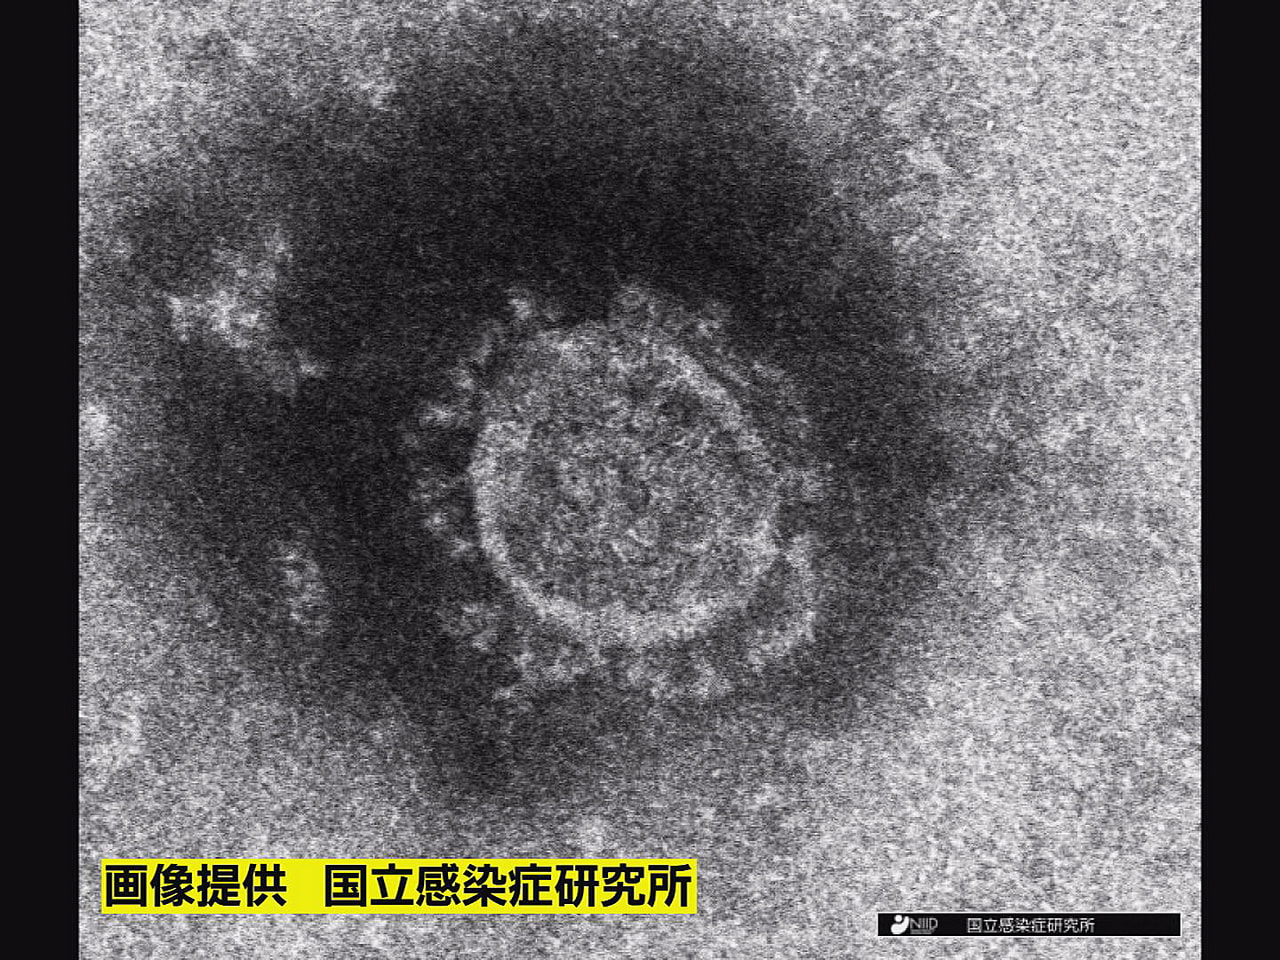 岐阜県は２２日、新型コロナウイルスの感染者が新たに１４６人確認されたと発表しまし...